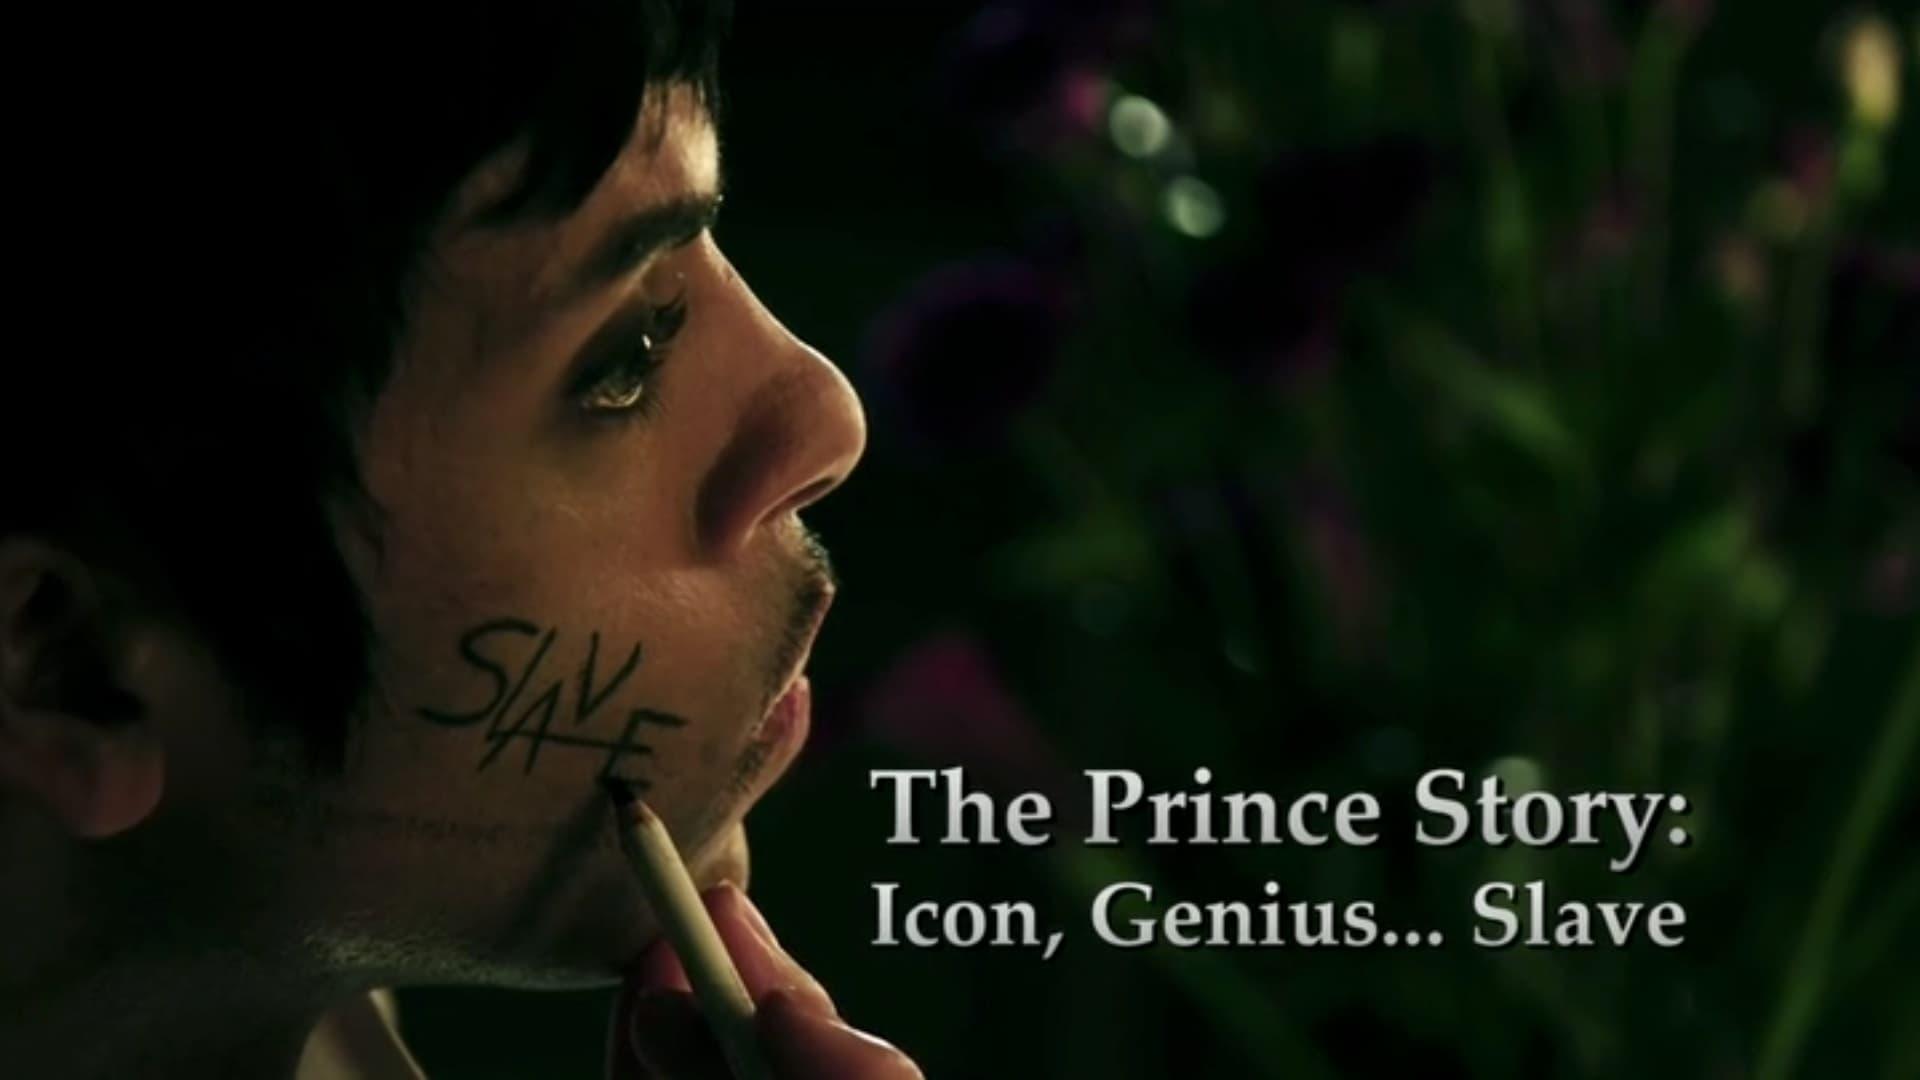 The Prince Story: Icon, Genius... Slave backdrop